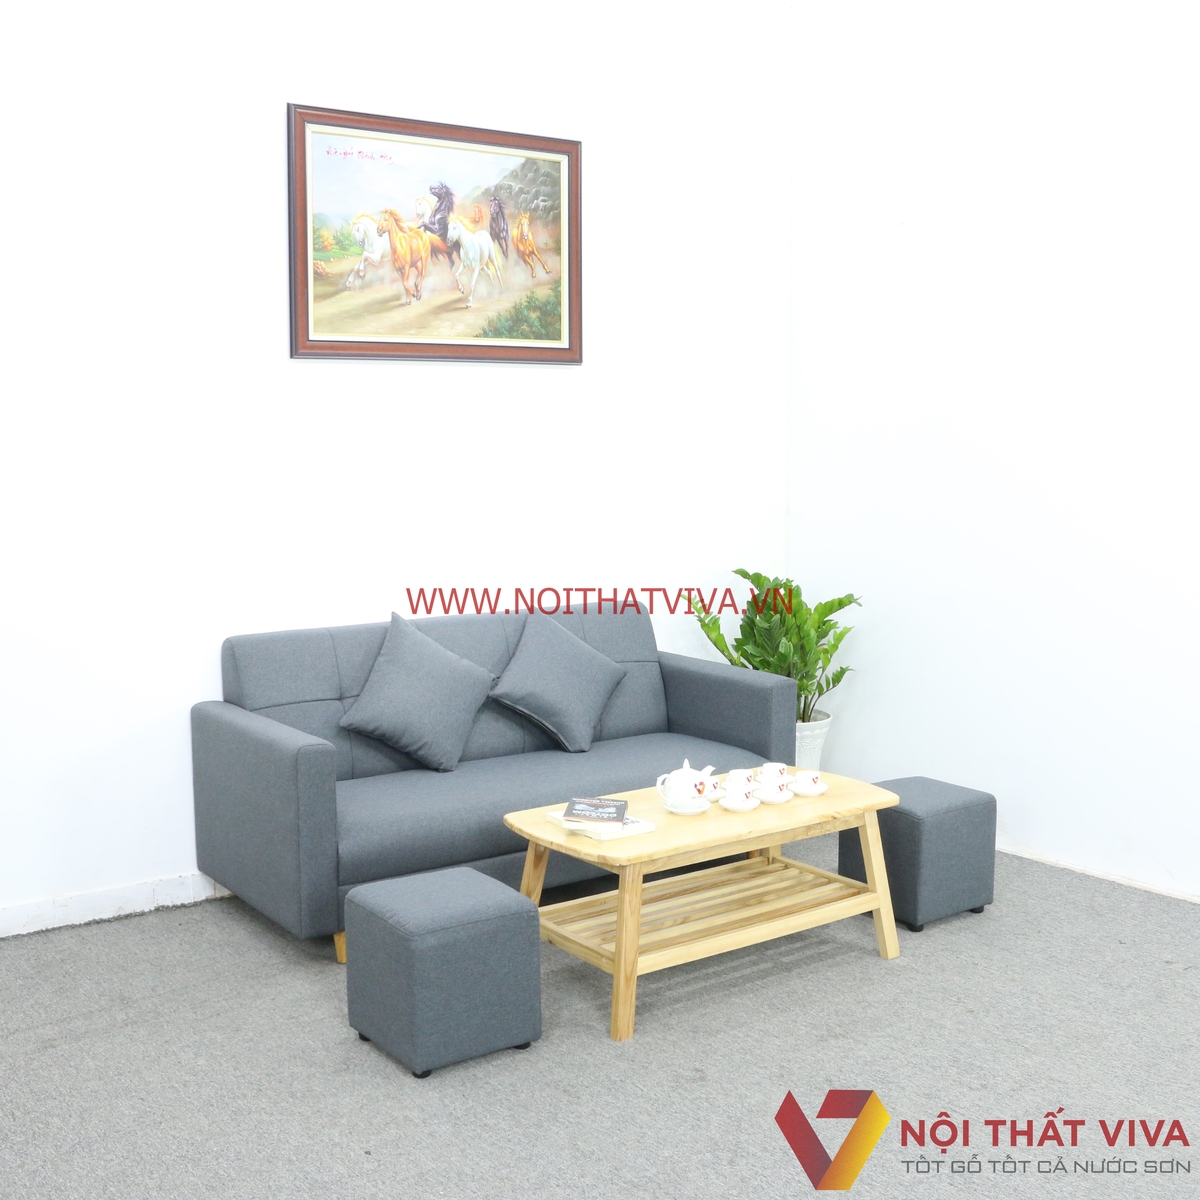 Bộ bàn ghế sofa mini nỉ màu xám: Không gian nhỏ có thể trở nên tiện nghi và đẳng cấp hơn với bộ bàn ghế sofa mini nỉ màu xám. Với thiết kế nhỏ gọn, màu sắc trang nhã và chất liệu thân thiện với môi trường, bộ sofa này sẽ làm bạn hài lòng với không gian sống động và sang trọng.